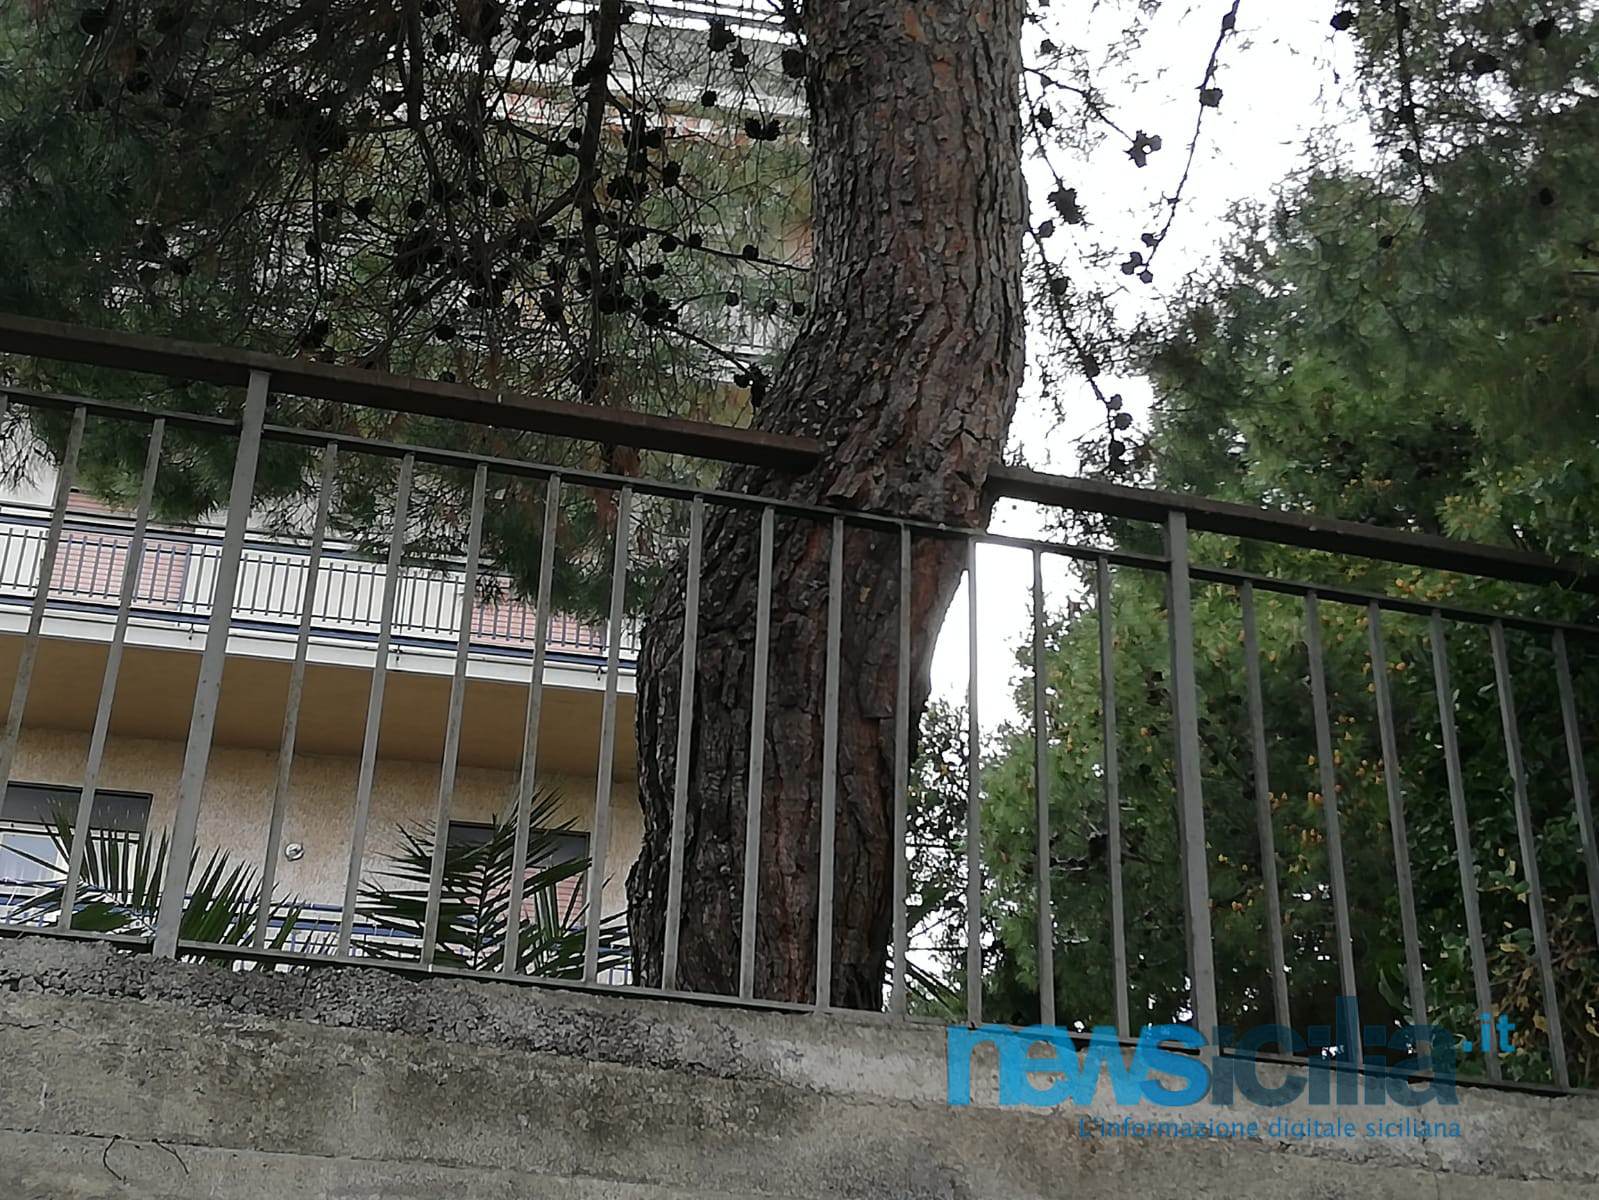 Alberi pericolanti in via Palermo, residenti esasperati: “Non ne possiamo più, il Comune ci aiuti”